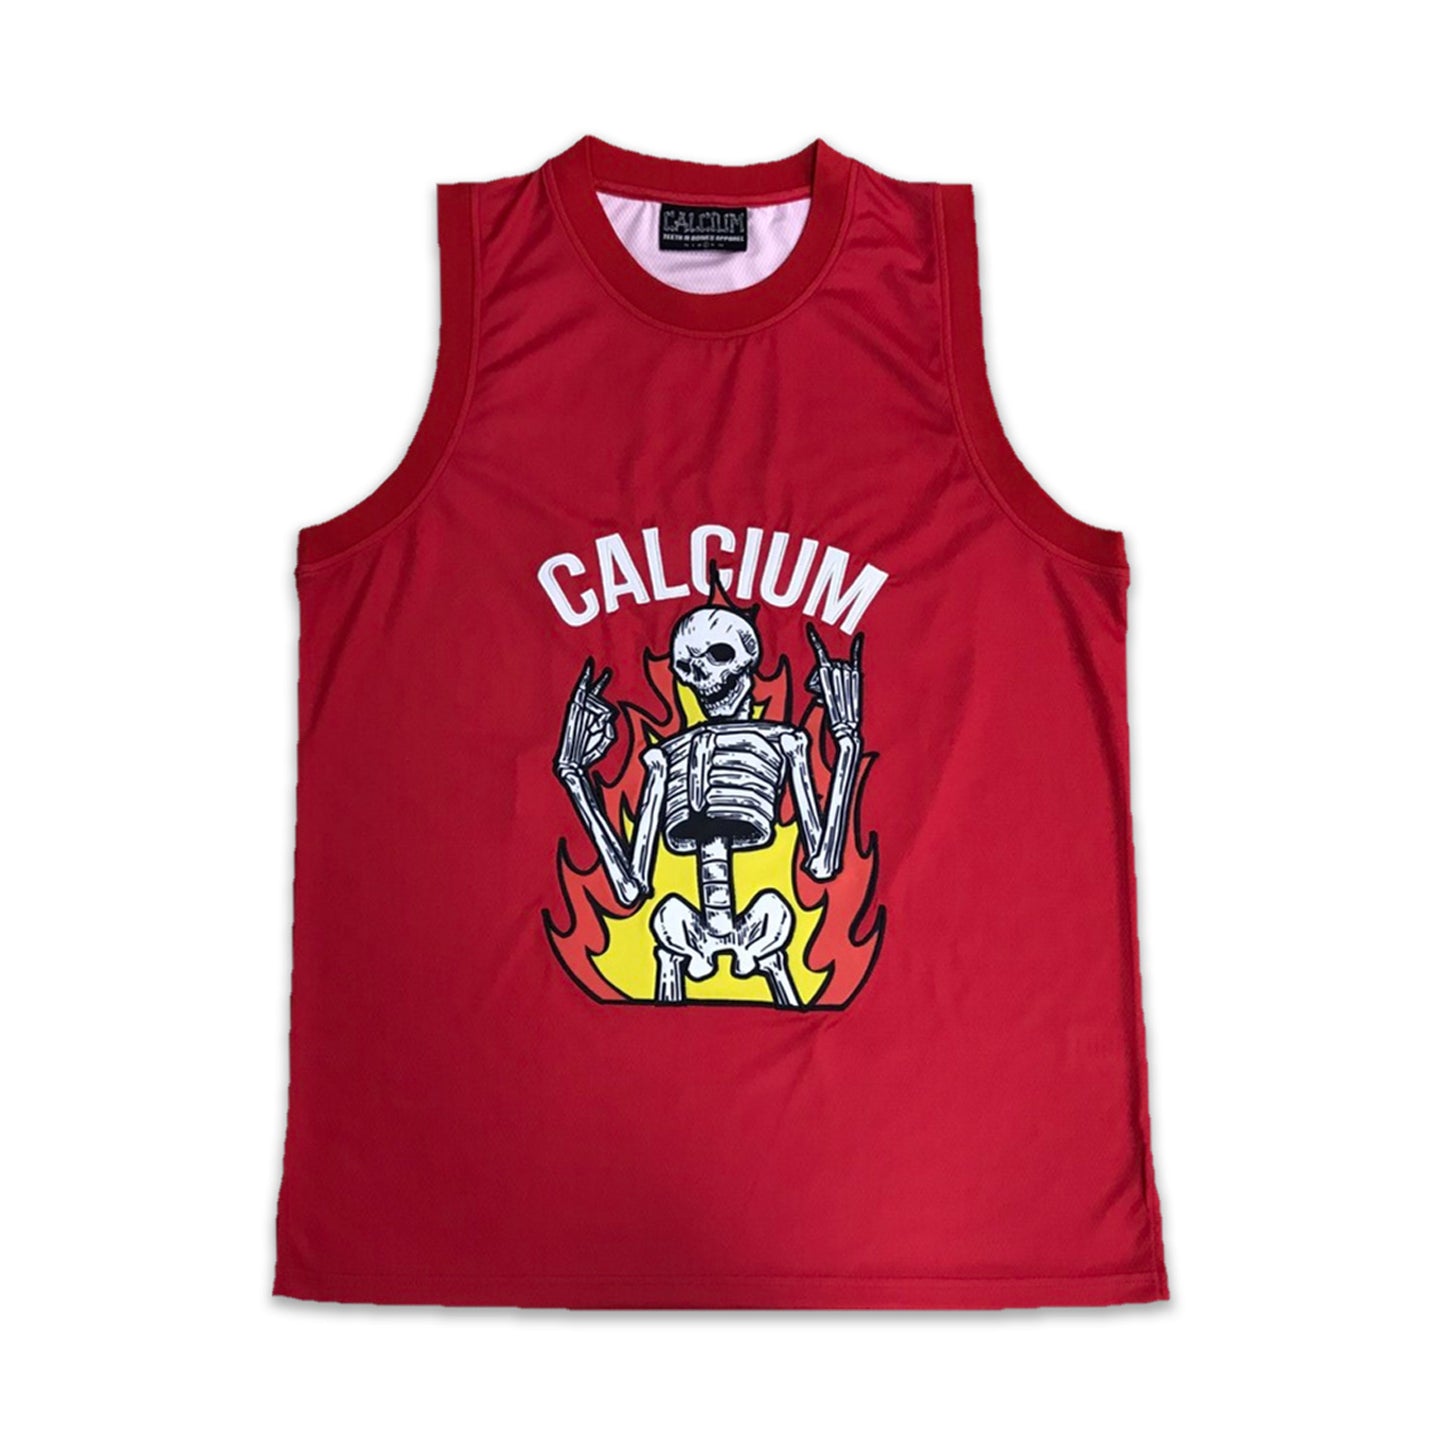 Calcium Skeleton Basketball Jersey – Calcium